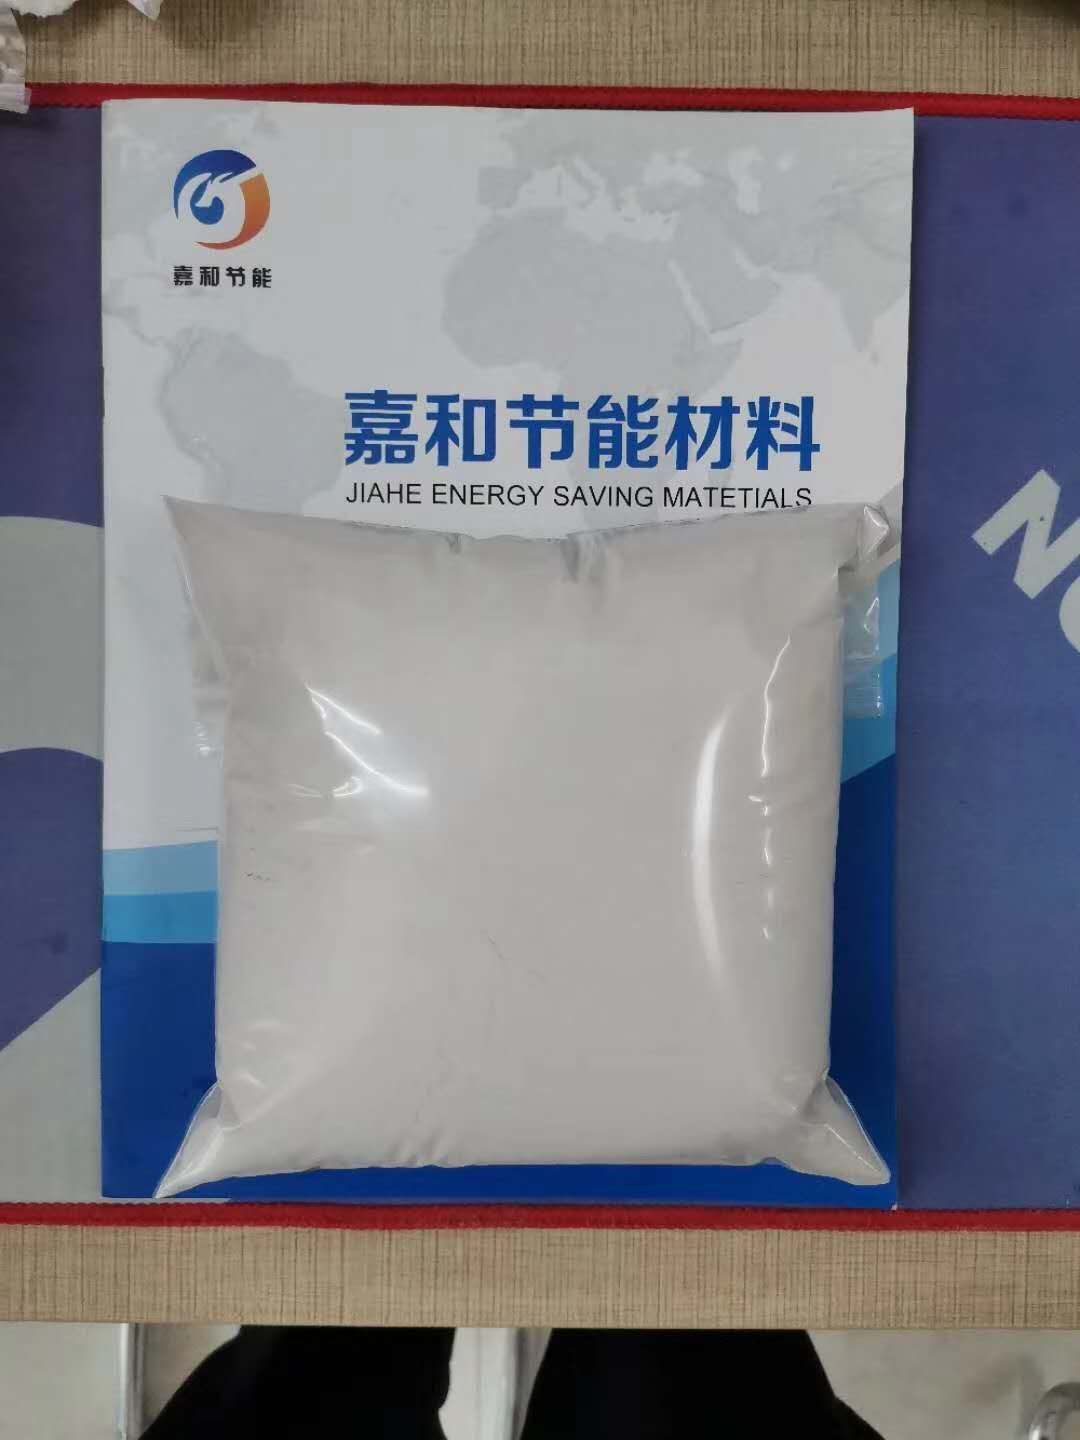 氧化铁皮生产用粘合剂 工业淀粉 萤石球生产用粘合剂 山东嘉和4